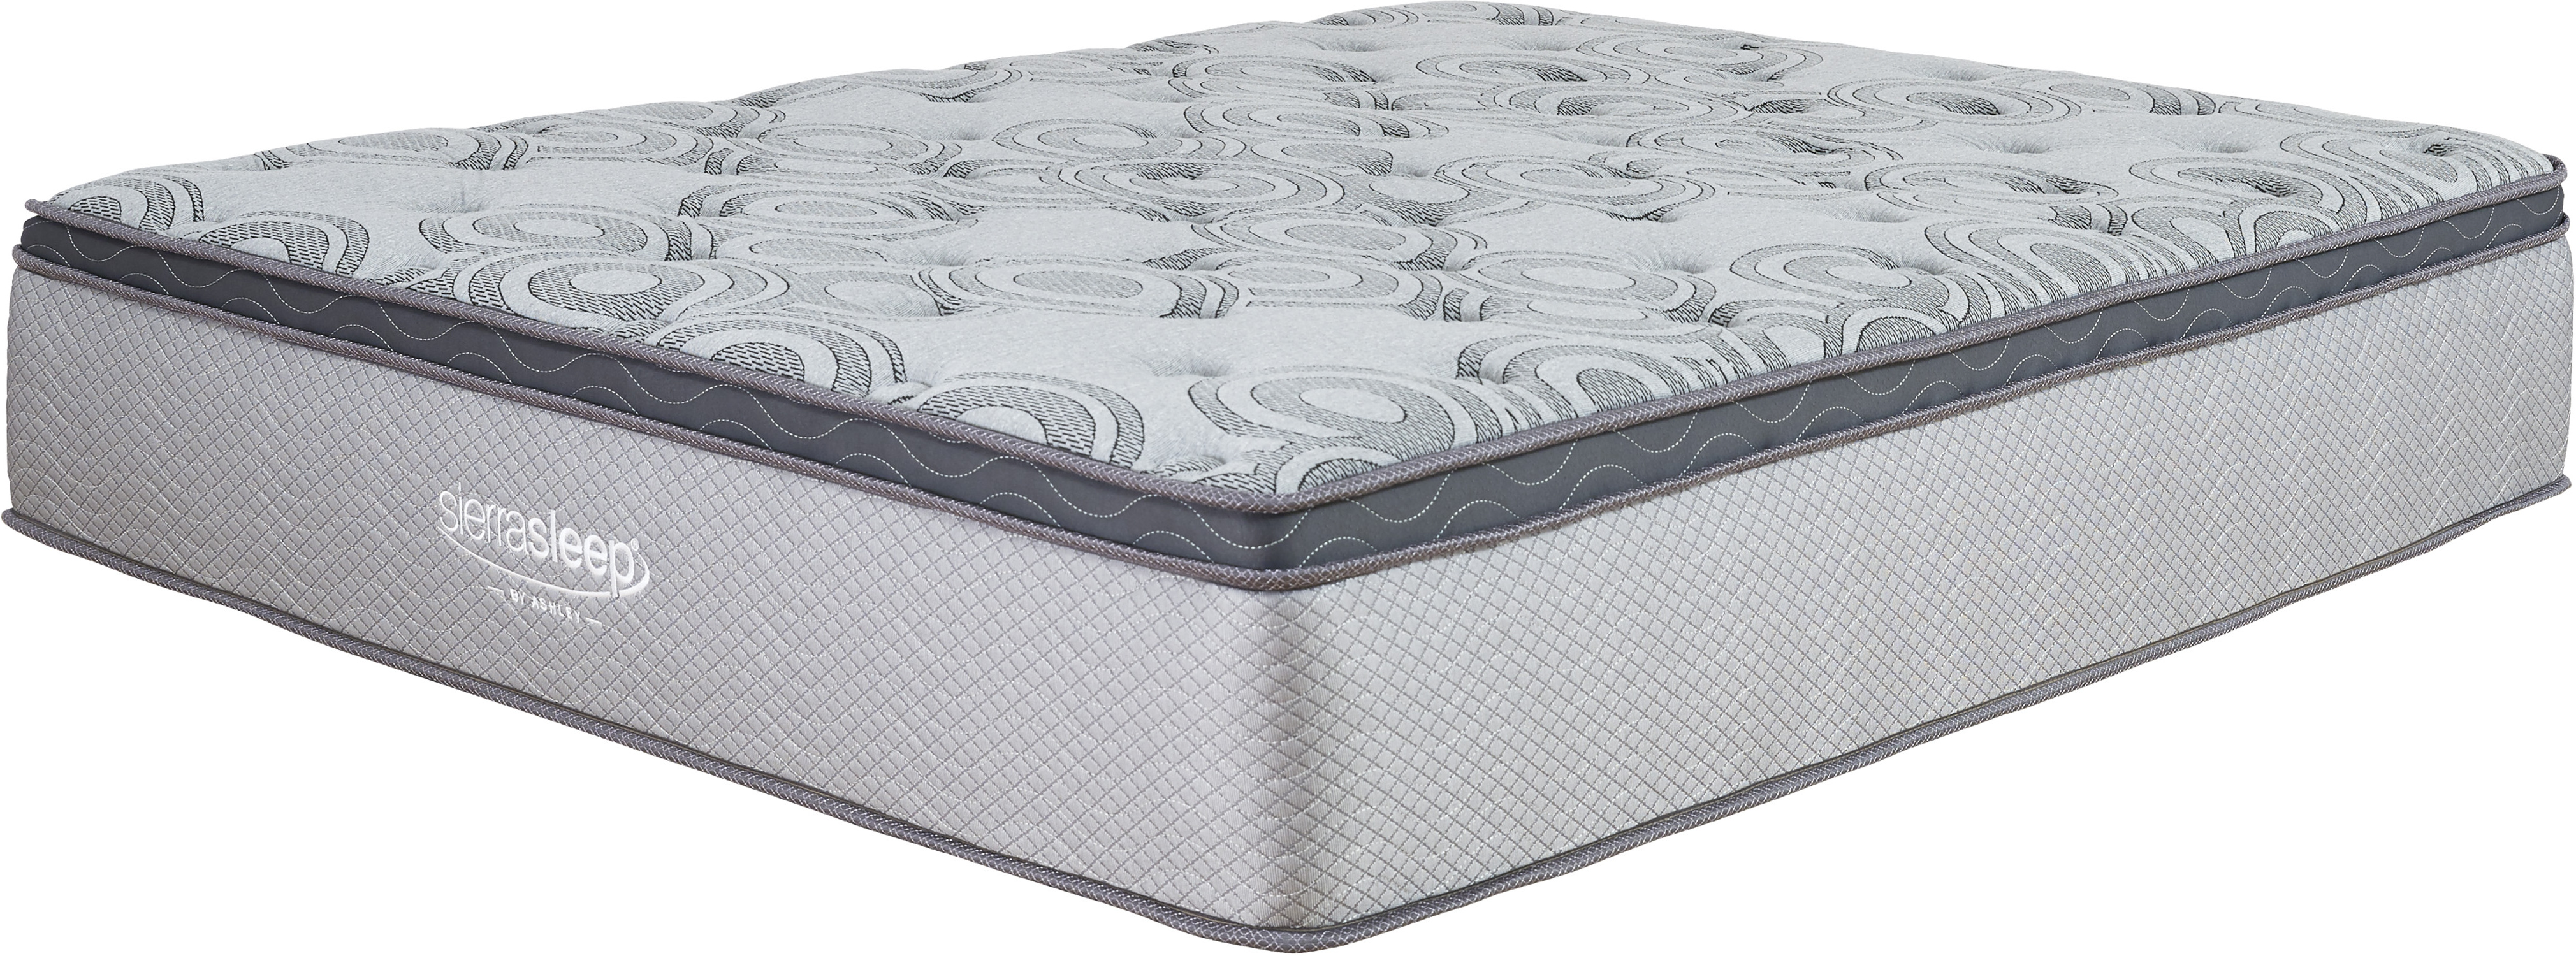 augusta white queen mattress